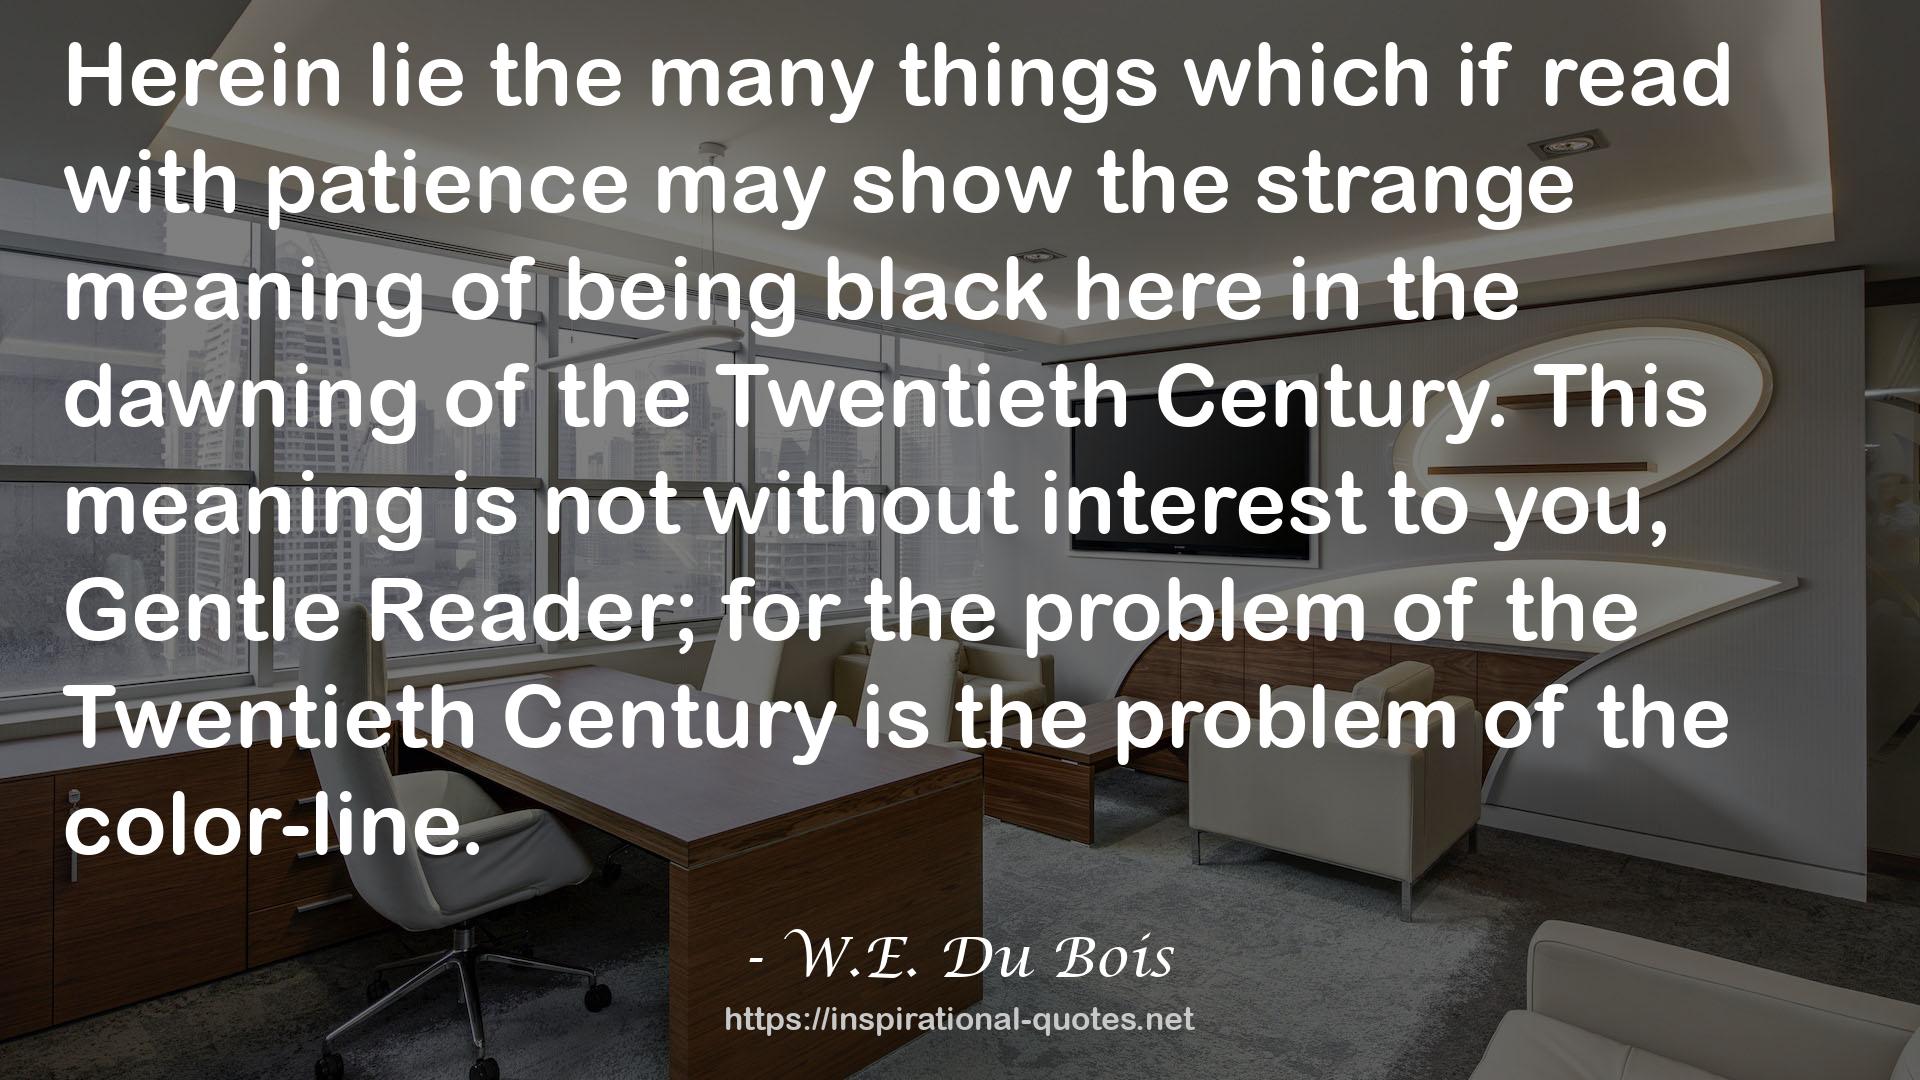 W.E. Du Bois QUOTES